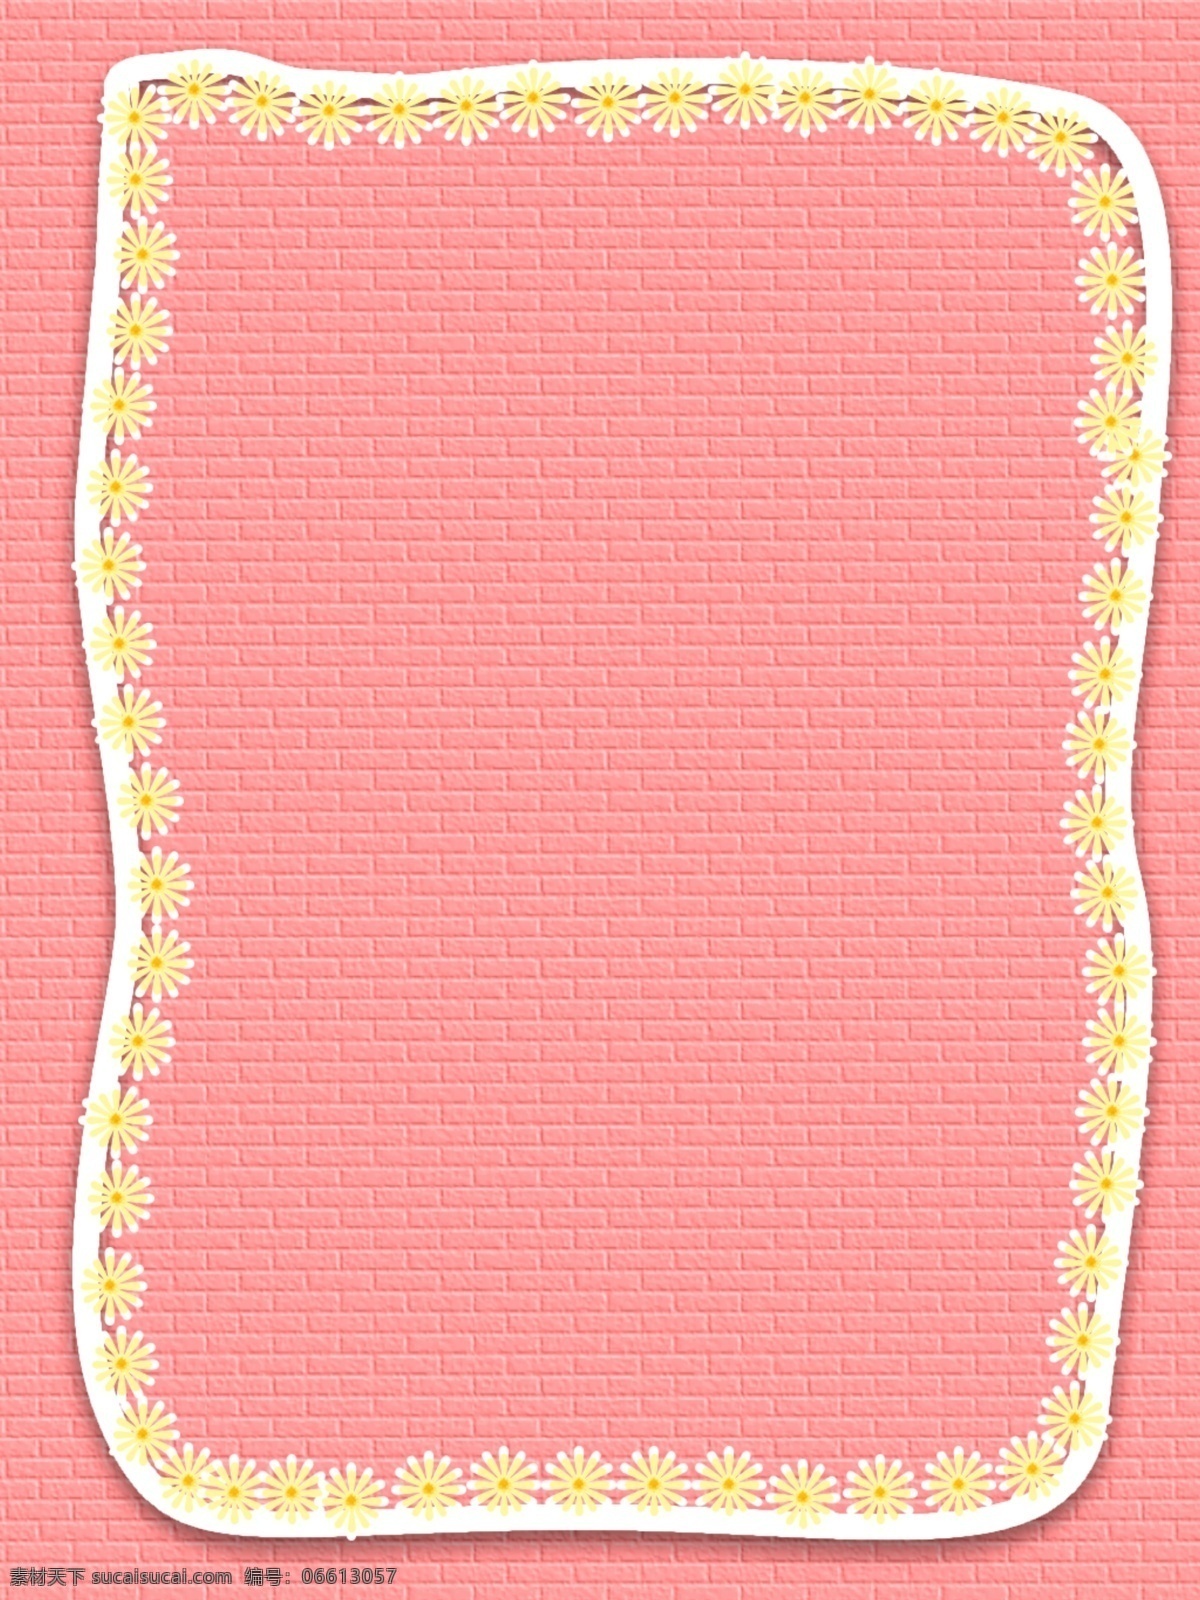 手绘 粉色 母亲节 雏 菊 纹理 背景 简约 节日背景 墙面 砖头